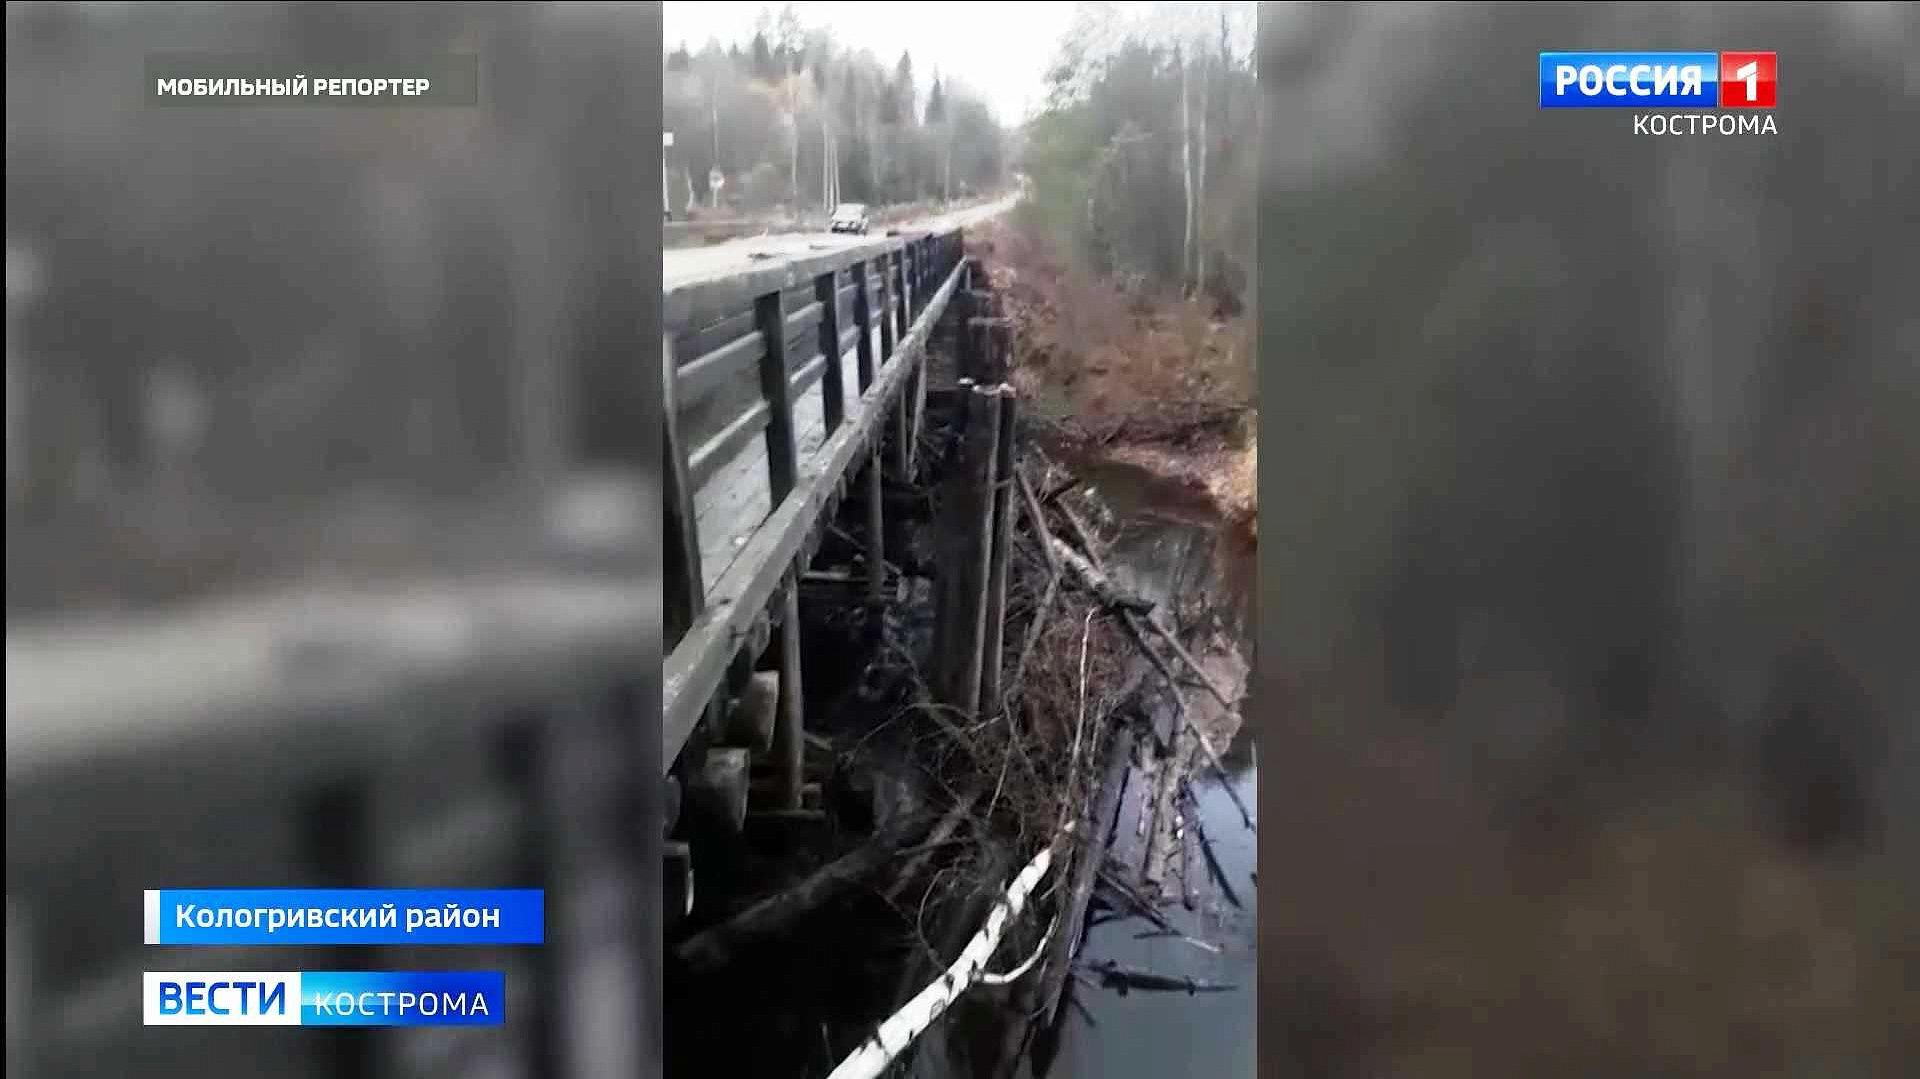 Мост в Костромской области «подвис» в аварийном состоянии